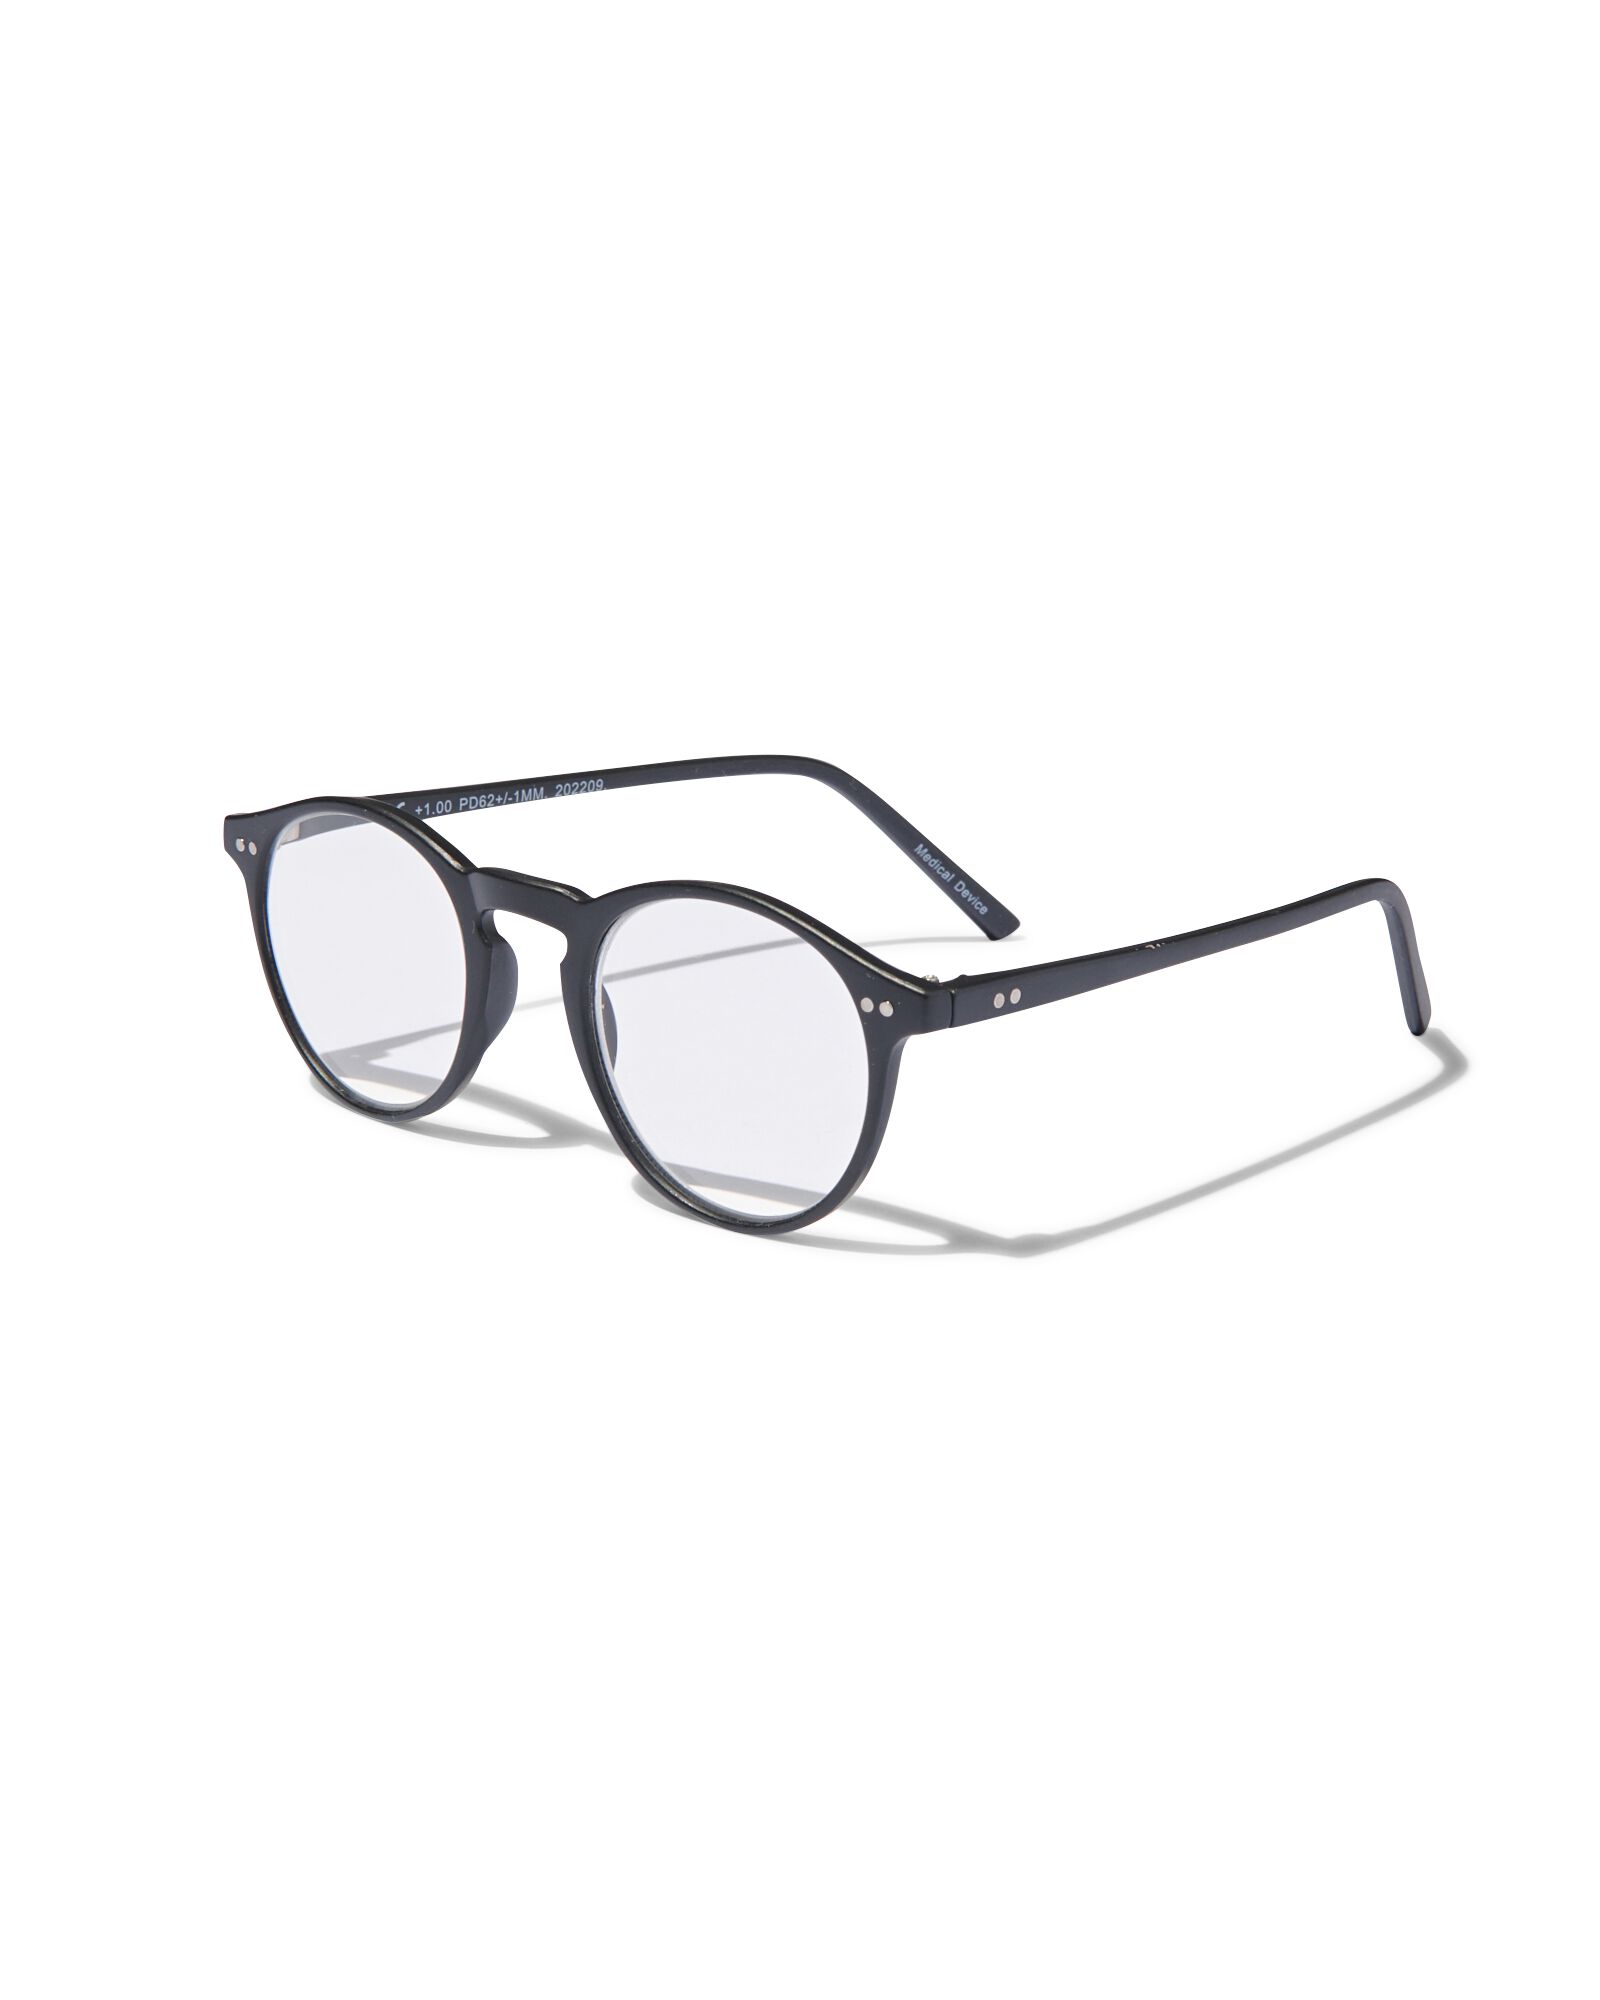 leesbril kunststof +1.0 - HEMA